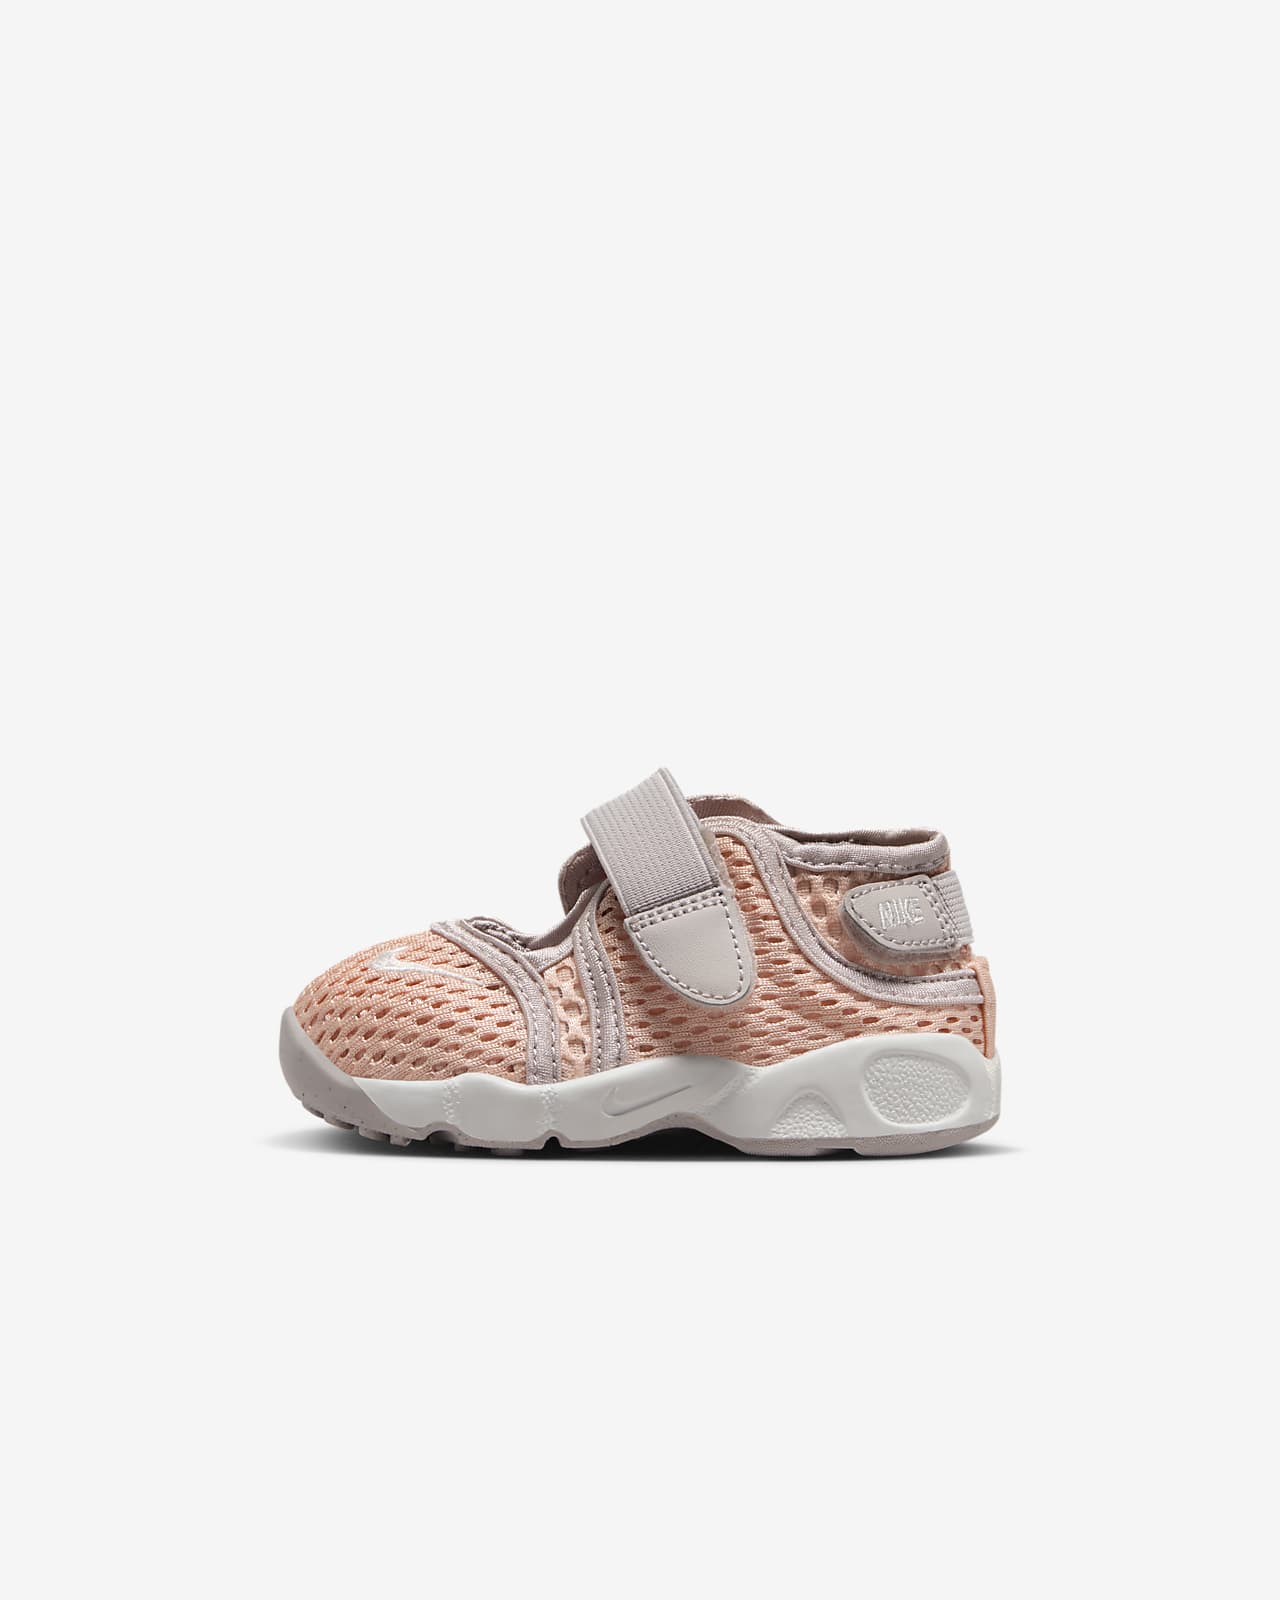 Nike Rift 2 Baby/Toddler Shoes